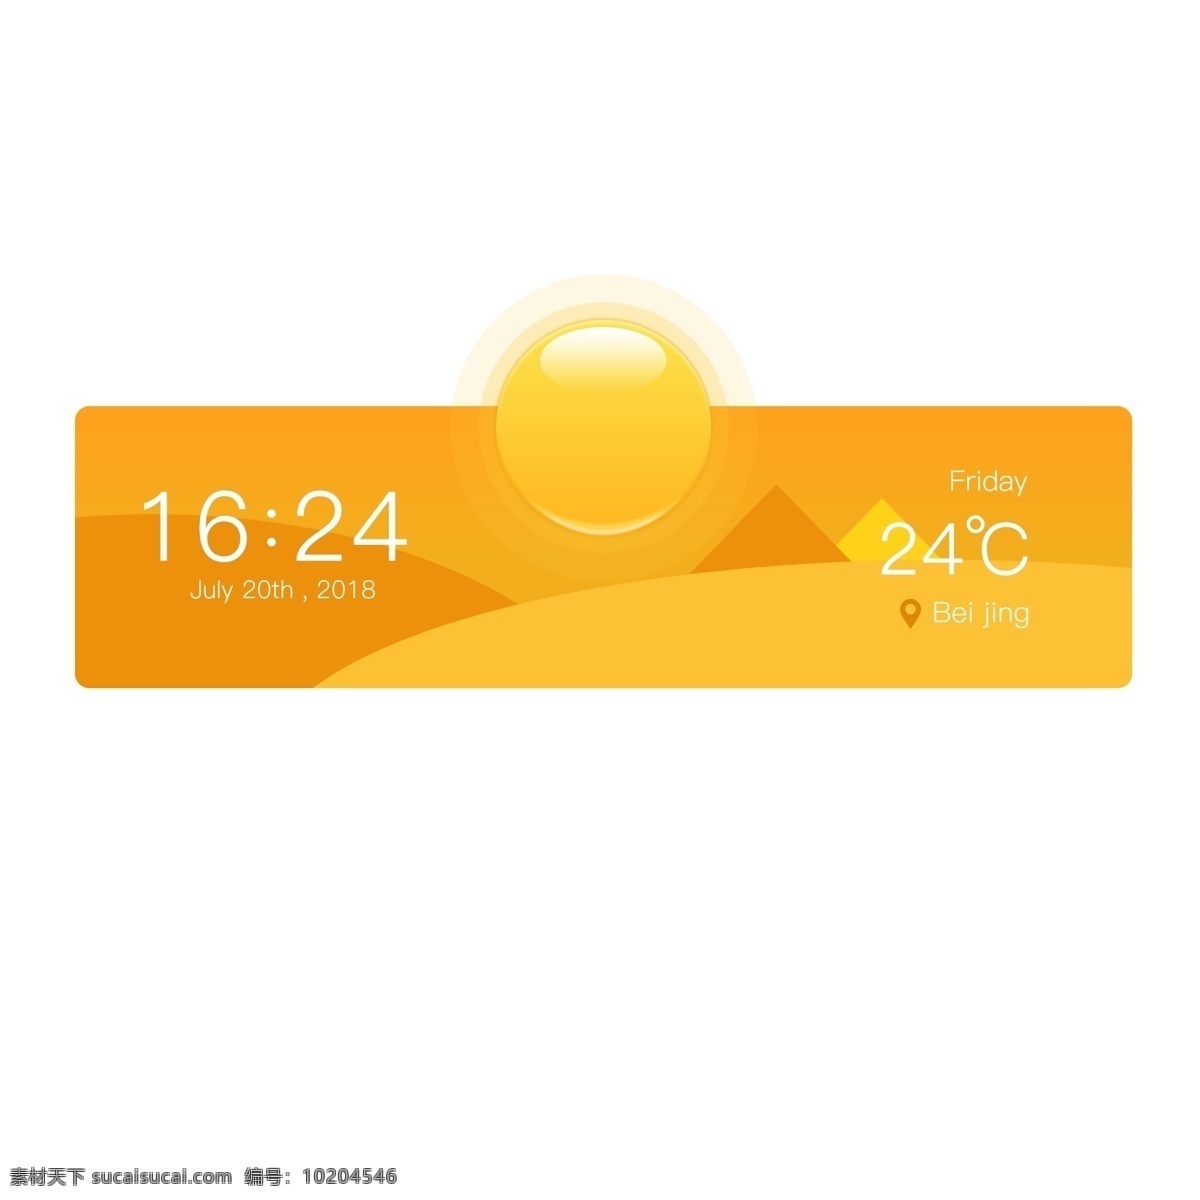 晴天 沙漠 天气 插件 图标 太阳 阳光 定位 温暖 时间 时间插件 手机插件 地点 温度